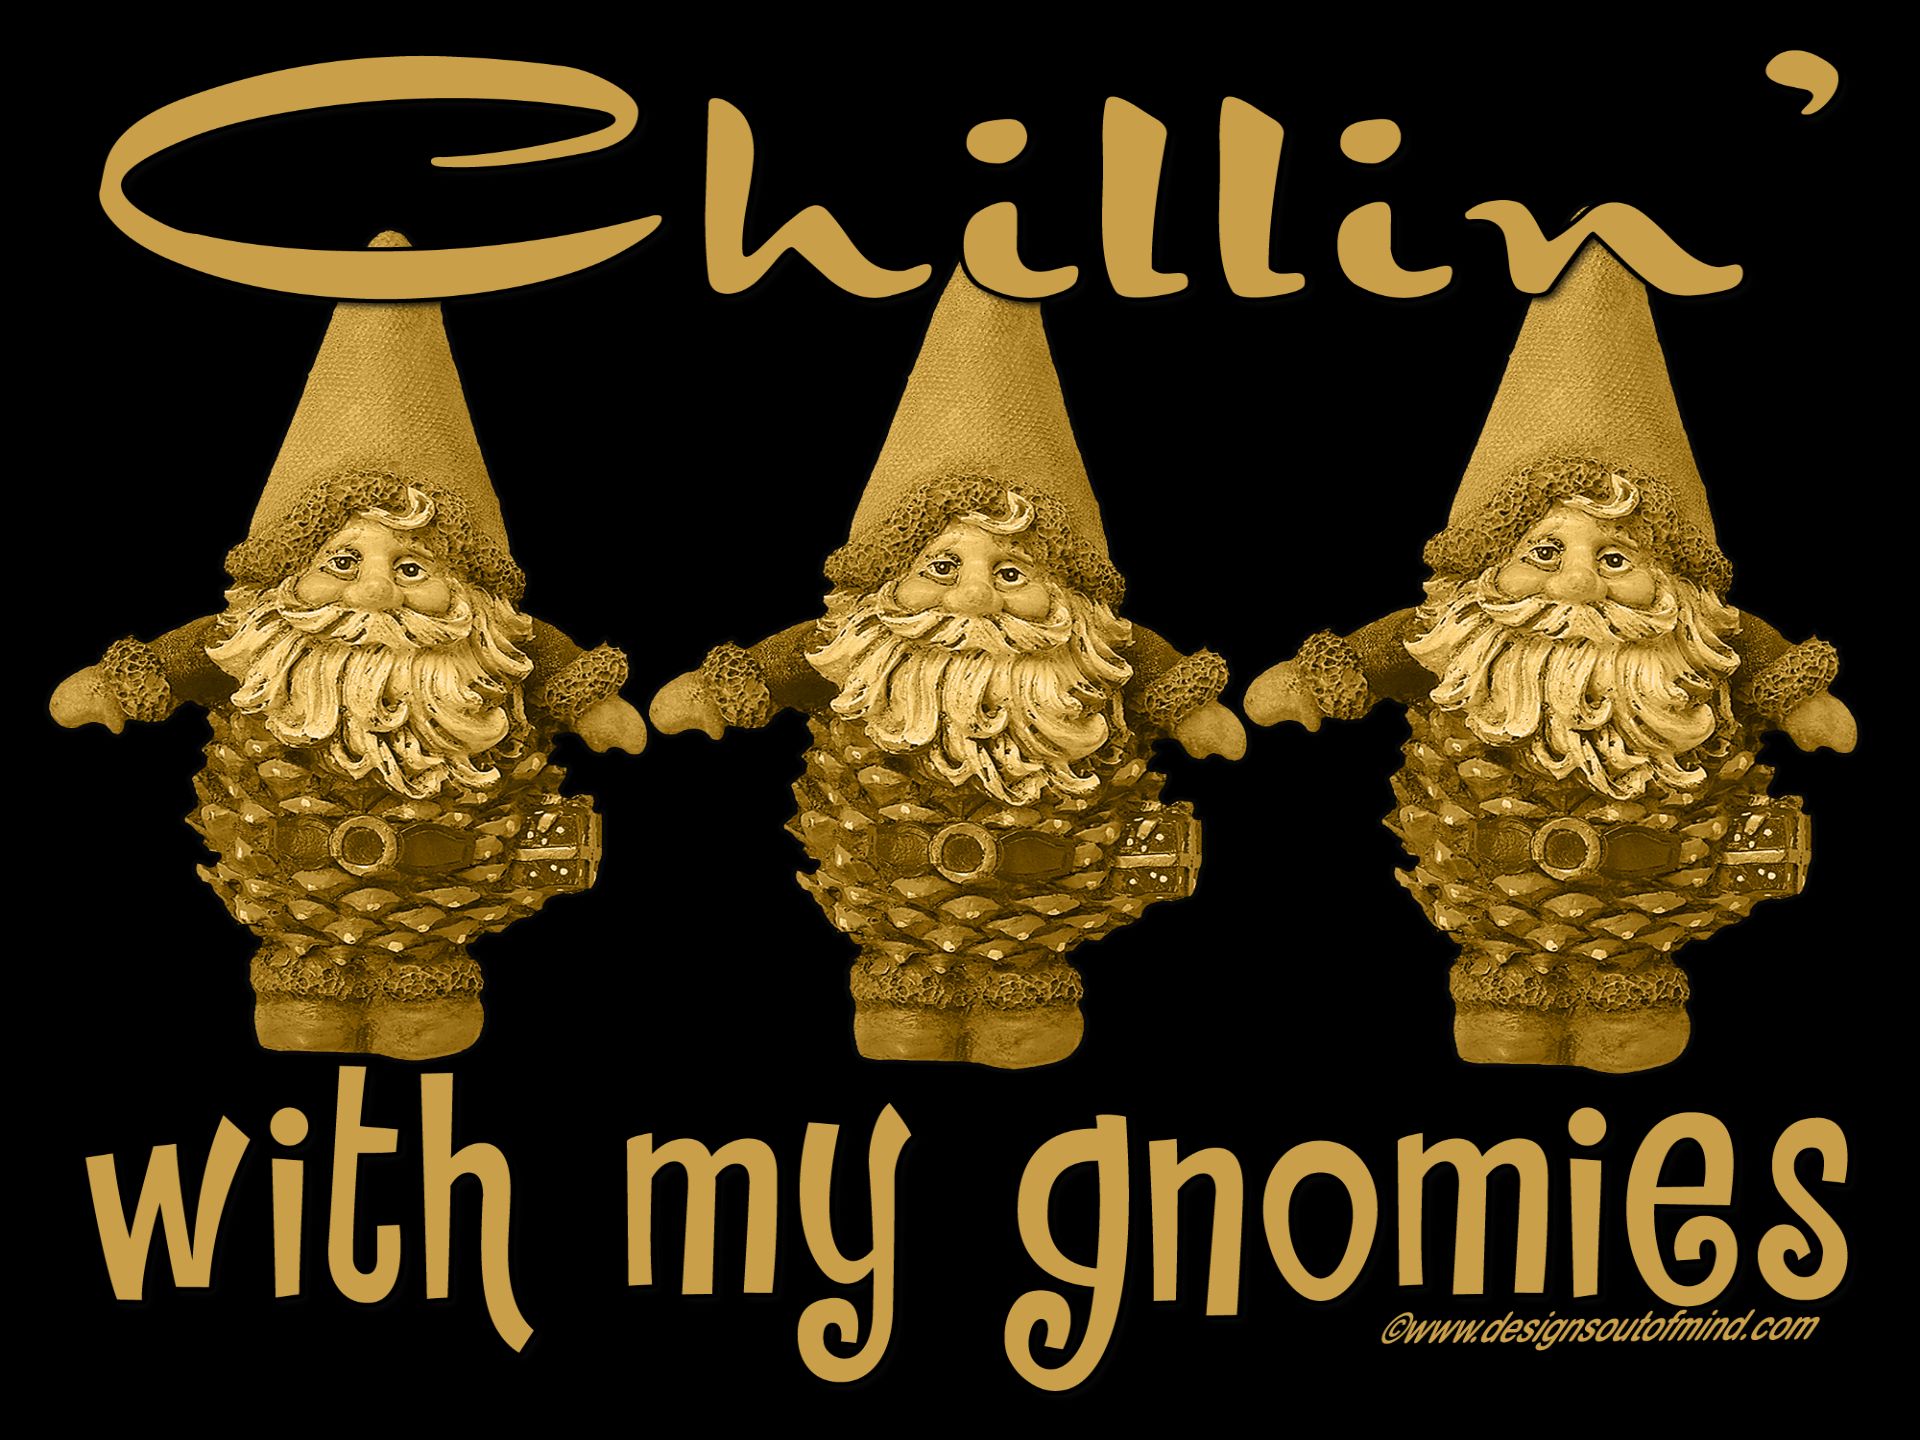 humor, fantasy, cute, funny, gnome